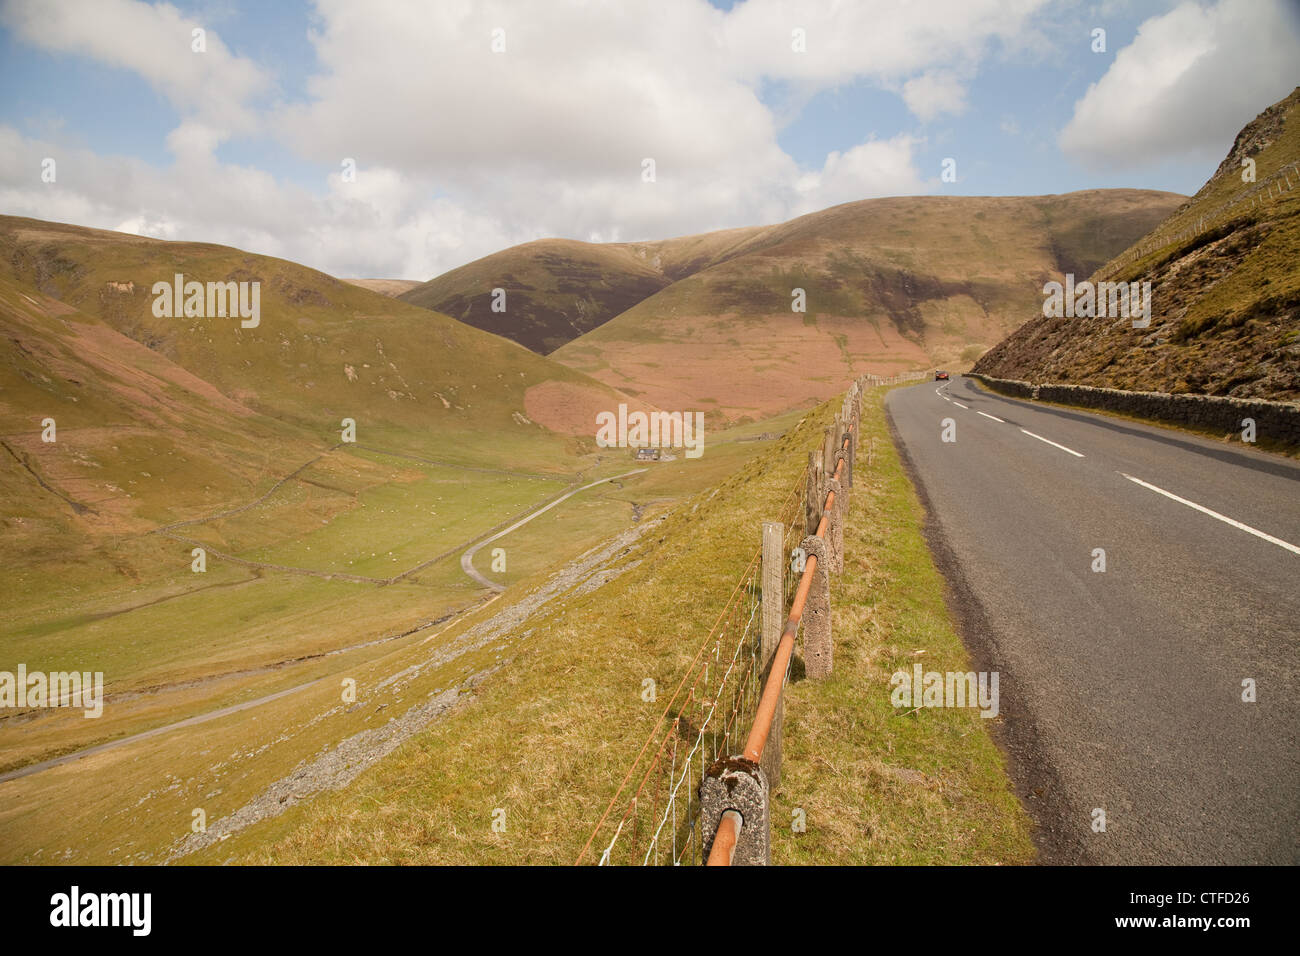 La carretera a los hilands, a través de las cañadas y valles, Foto de stock